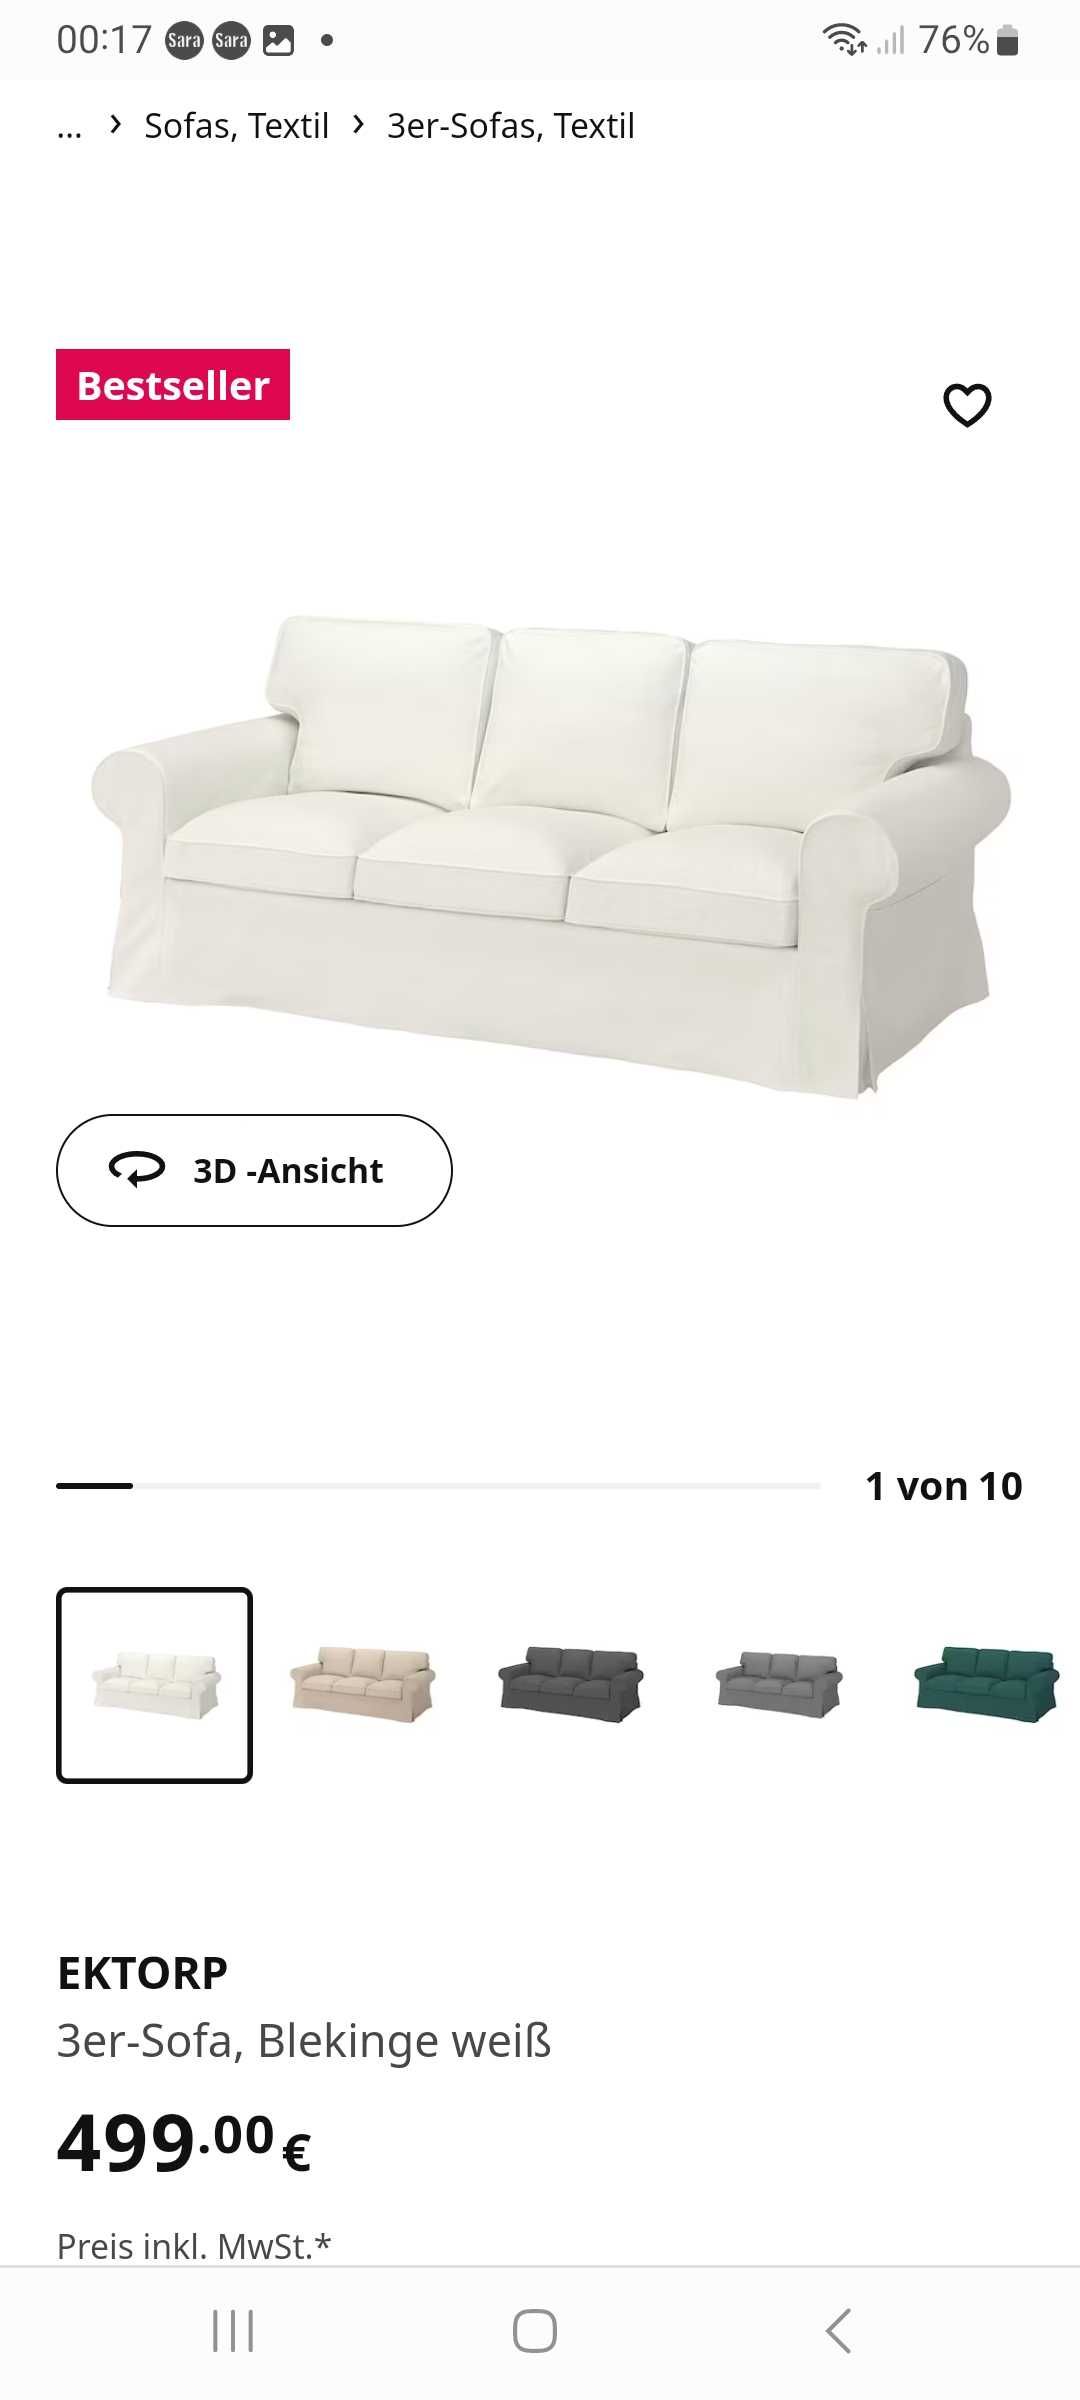 Sofa erktop ikea